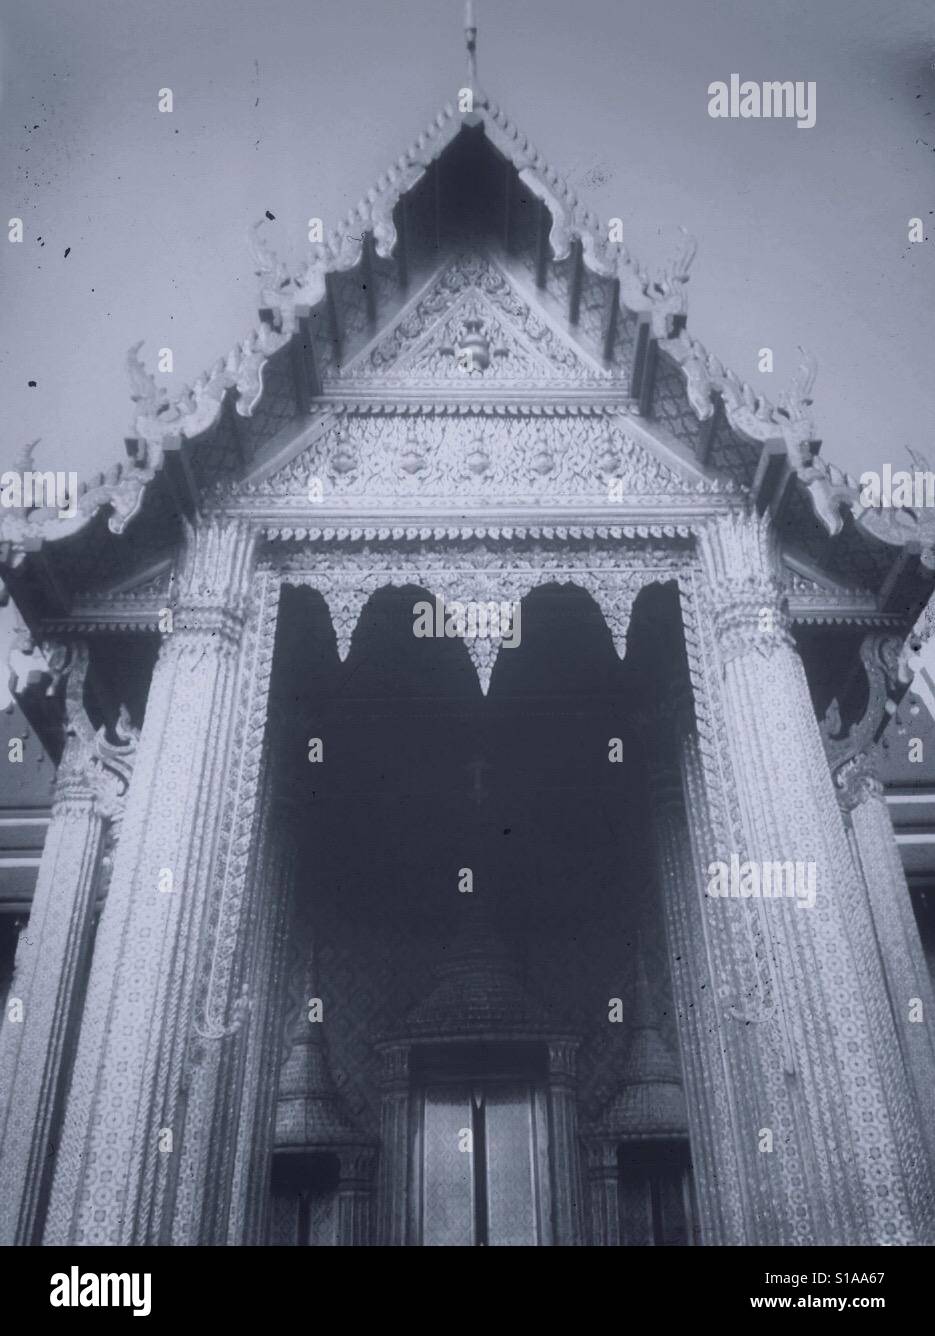 Das Tor des Grand Palace Bangkok, Thailand in schwarz / weiß Stockfoto